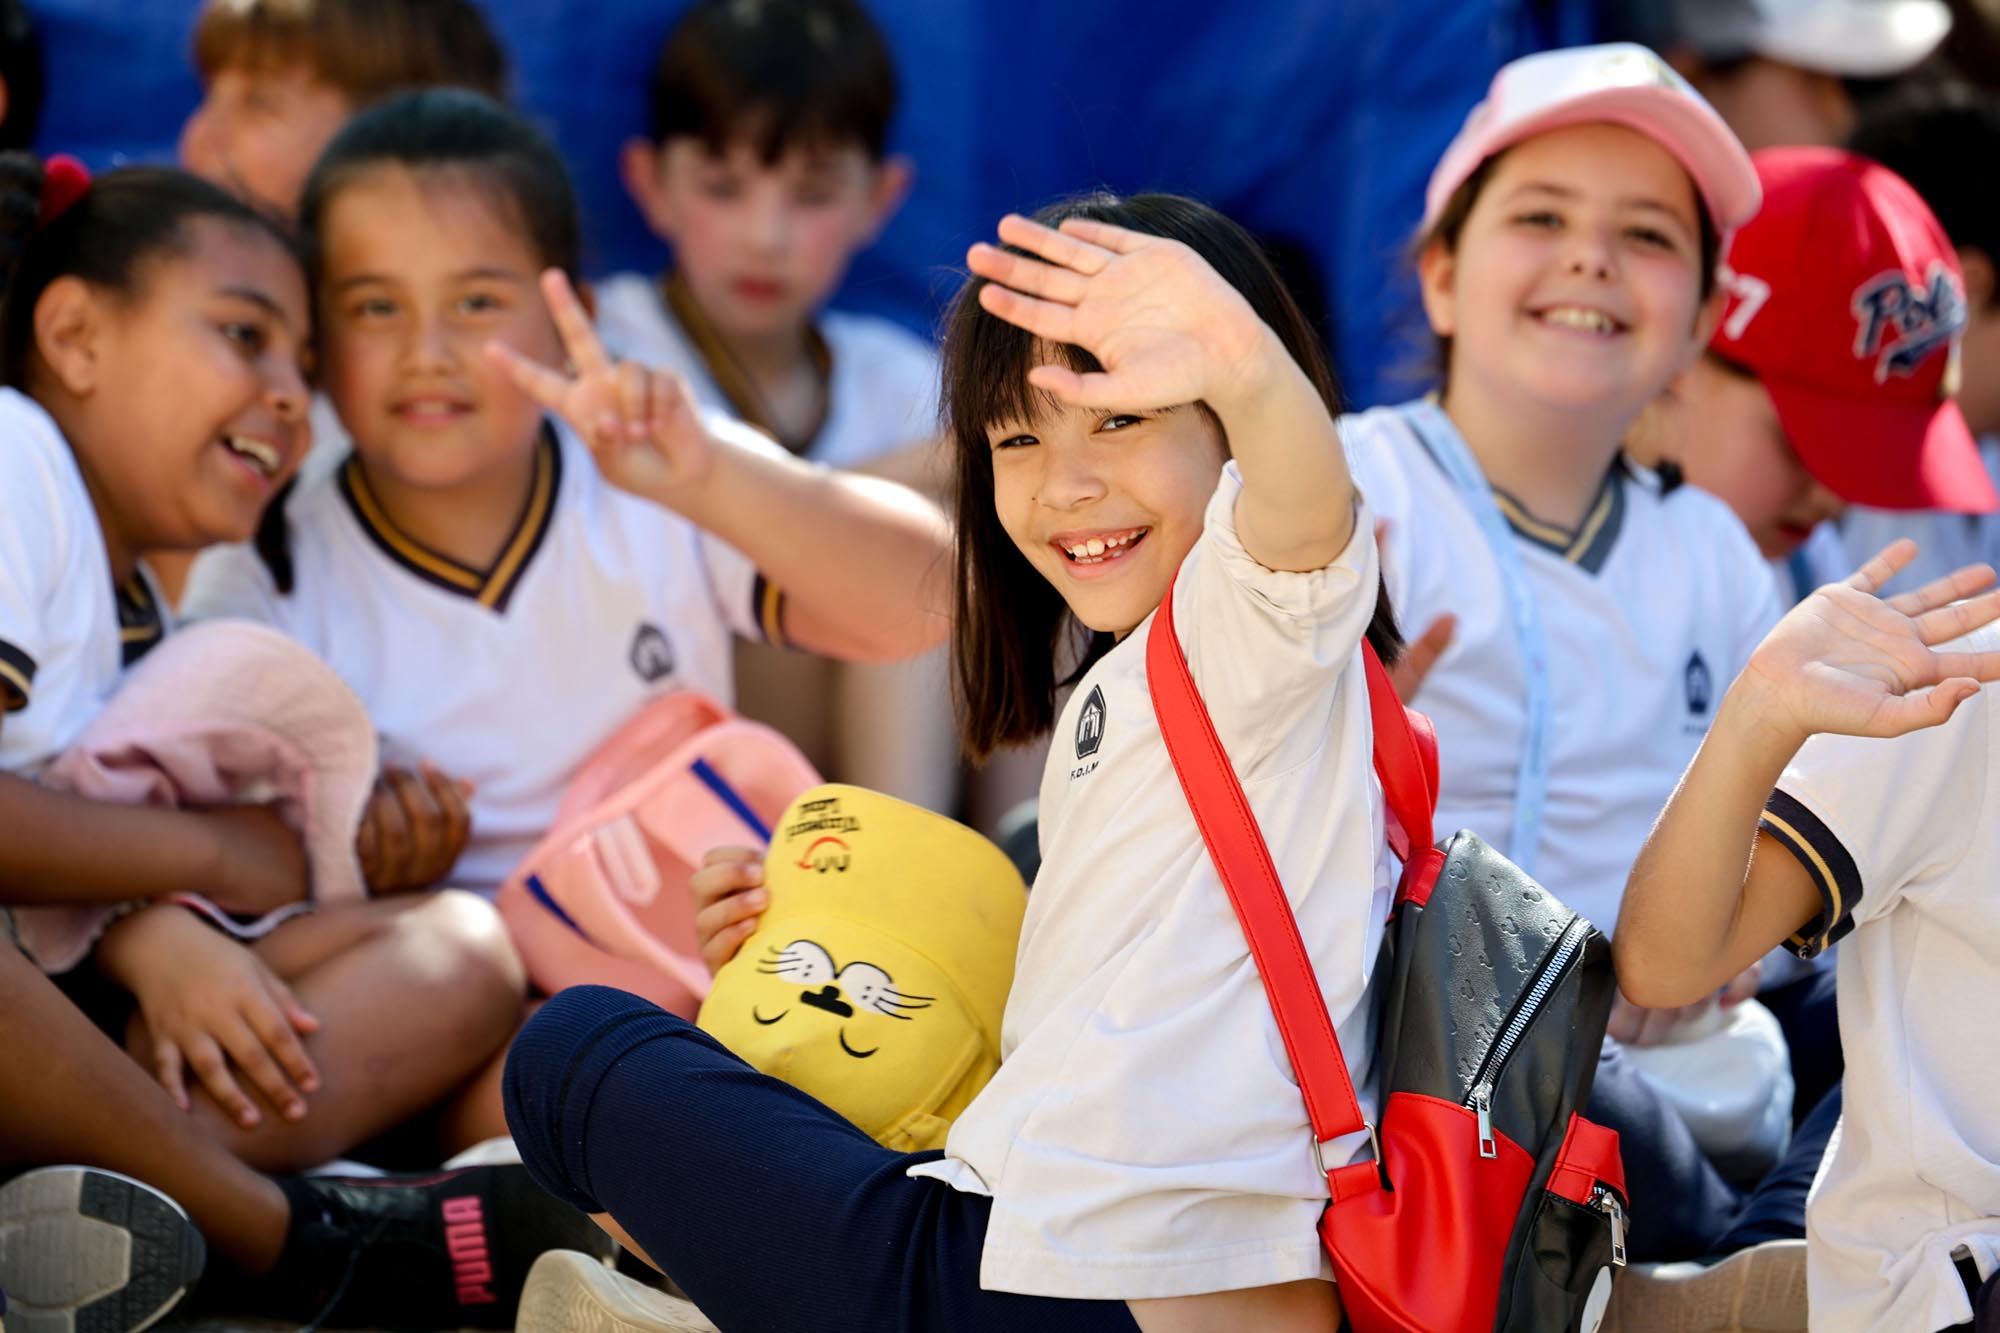 Los escolares de Ibiza visitan la feria Eivissa Medieval